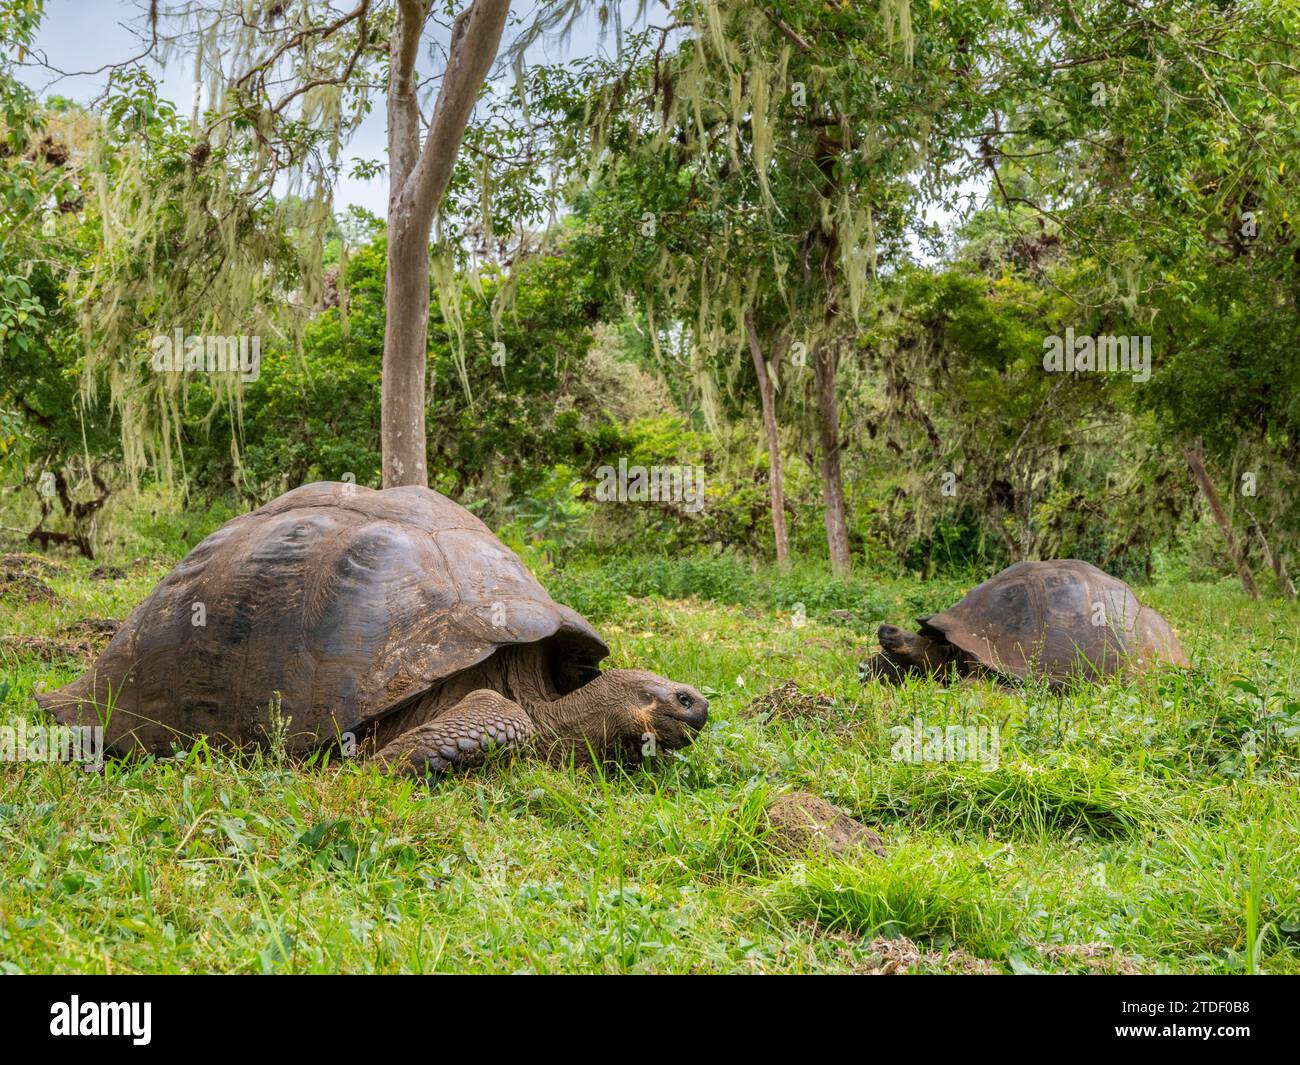 Tortues géantes sauvages des Galapagos (Chelonoidis spp), trouvées à Rancho Manzanillo, île de Santa Cruz, îles Galapagos, site du patrimoine mondial de l'UNESCO Banque D'Images